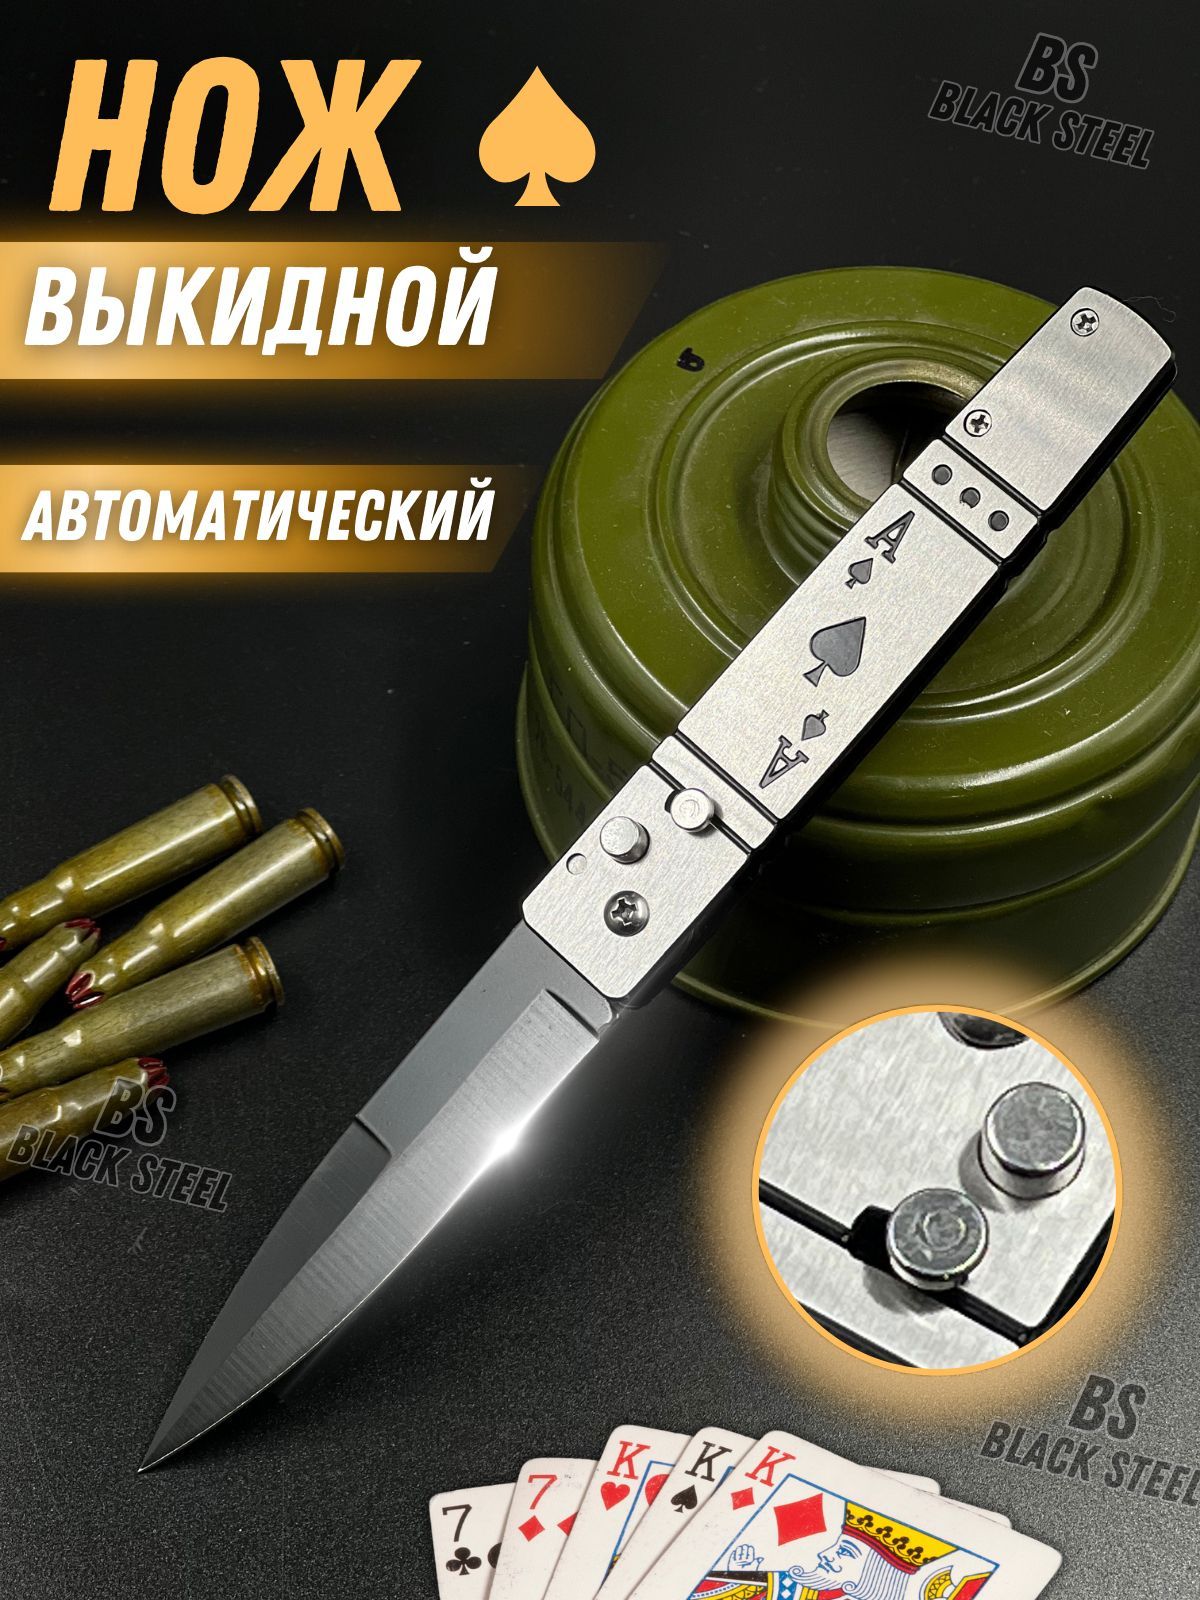 Автоматические ножи - купить складной и выкидной нож в Москве | Интернет магазин Рептилиан